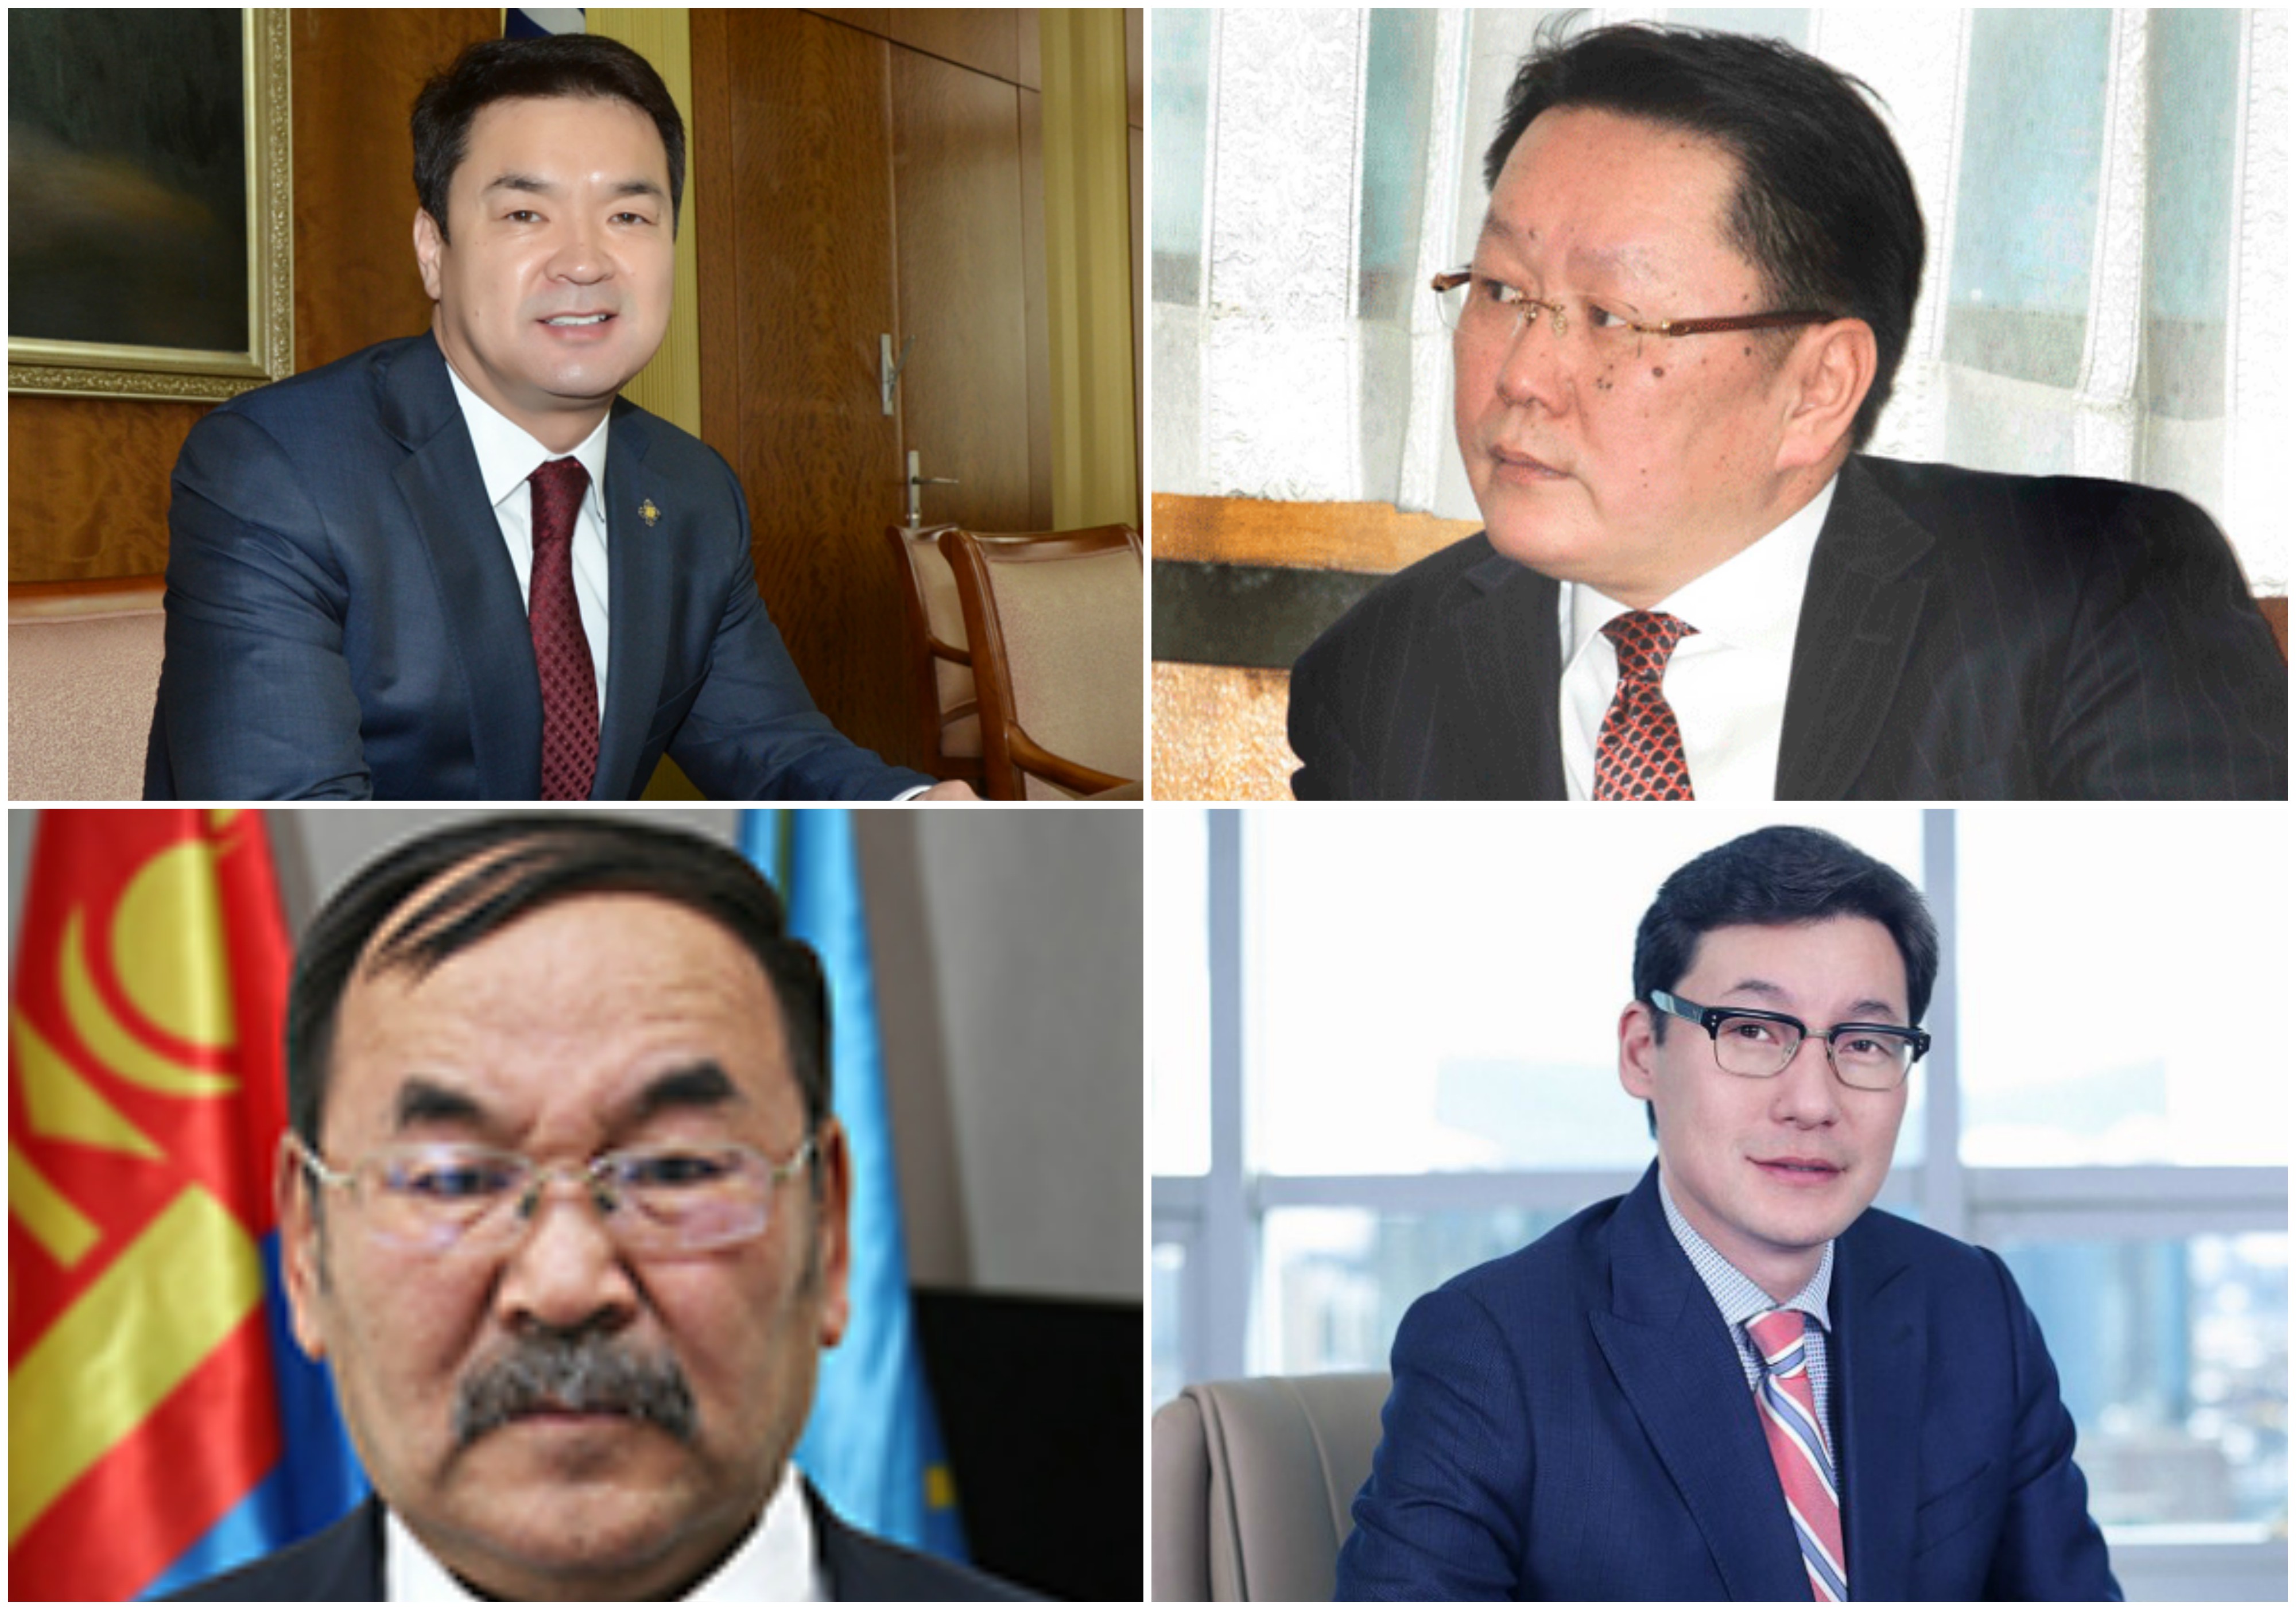 Засгийн газар, Монголбанк, Худалдаа хөгжлийн болон Улаанбаатар банкны удирдлагуудад хариуцлага тооцно